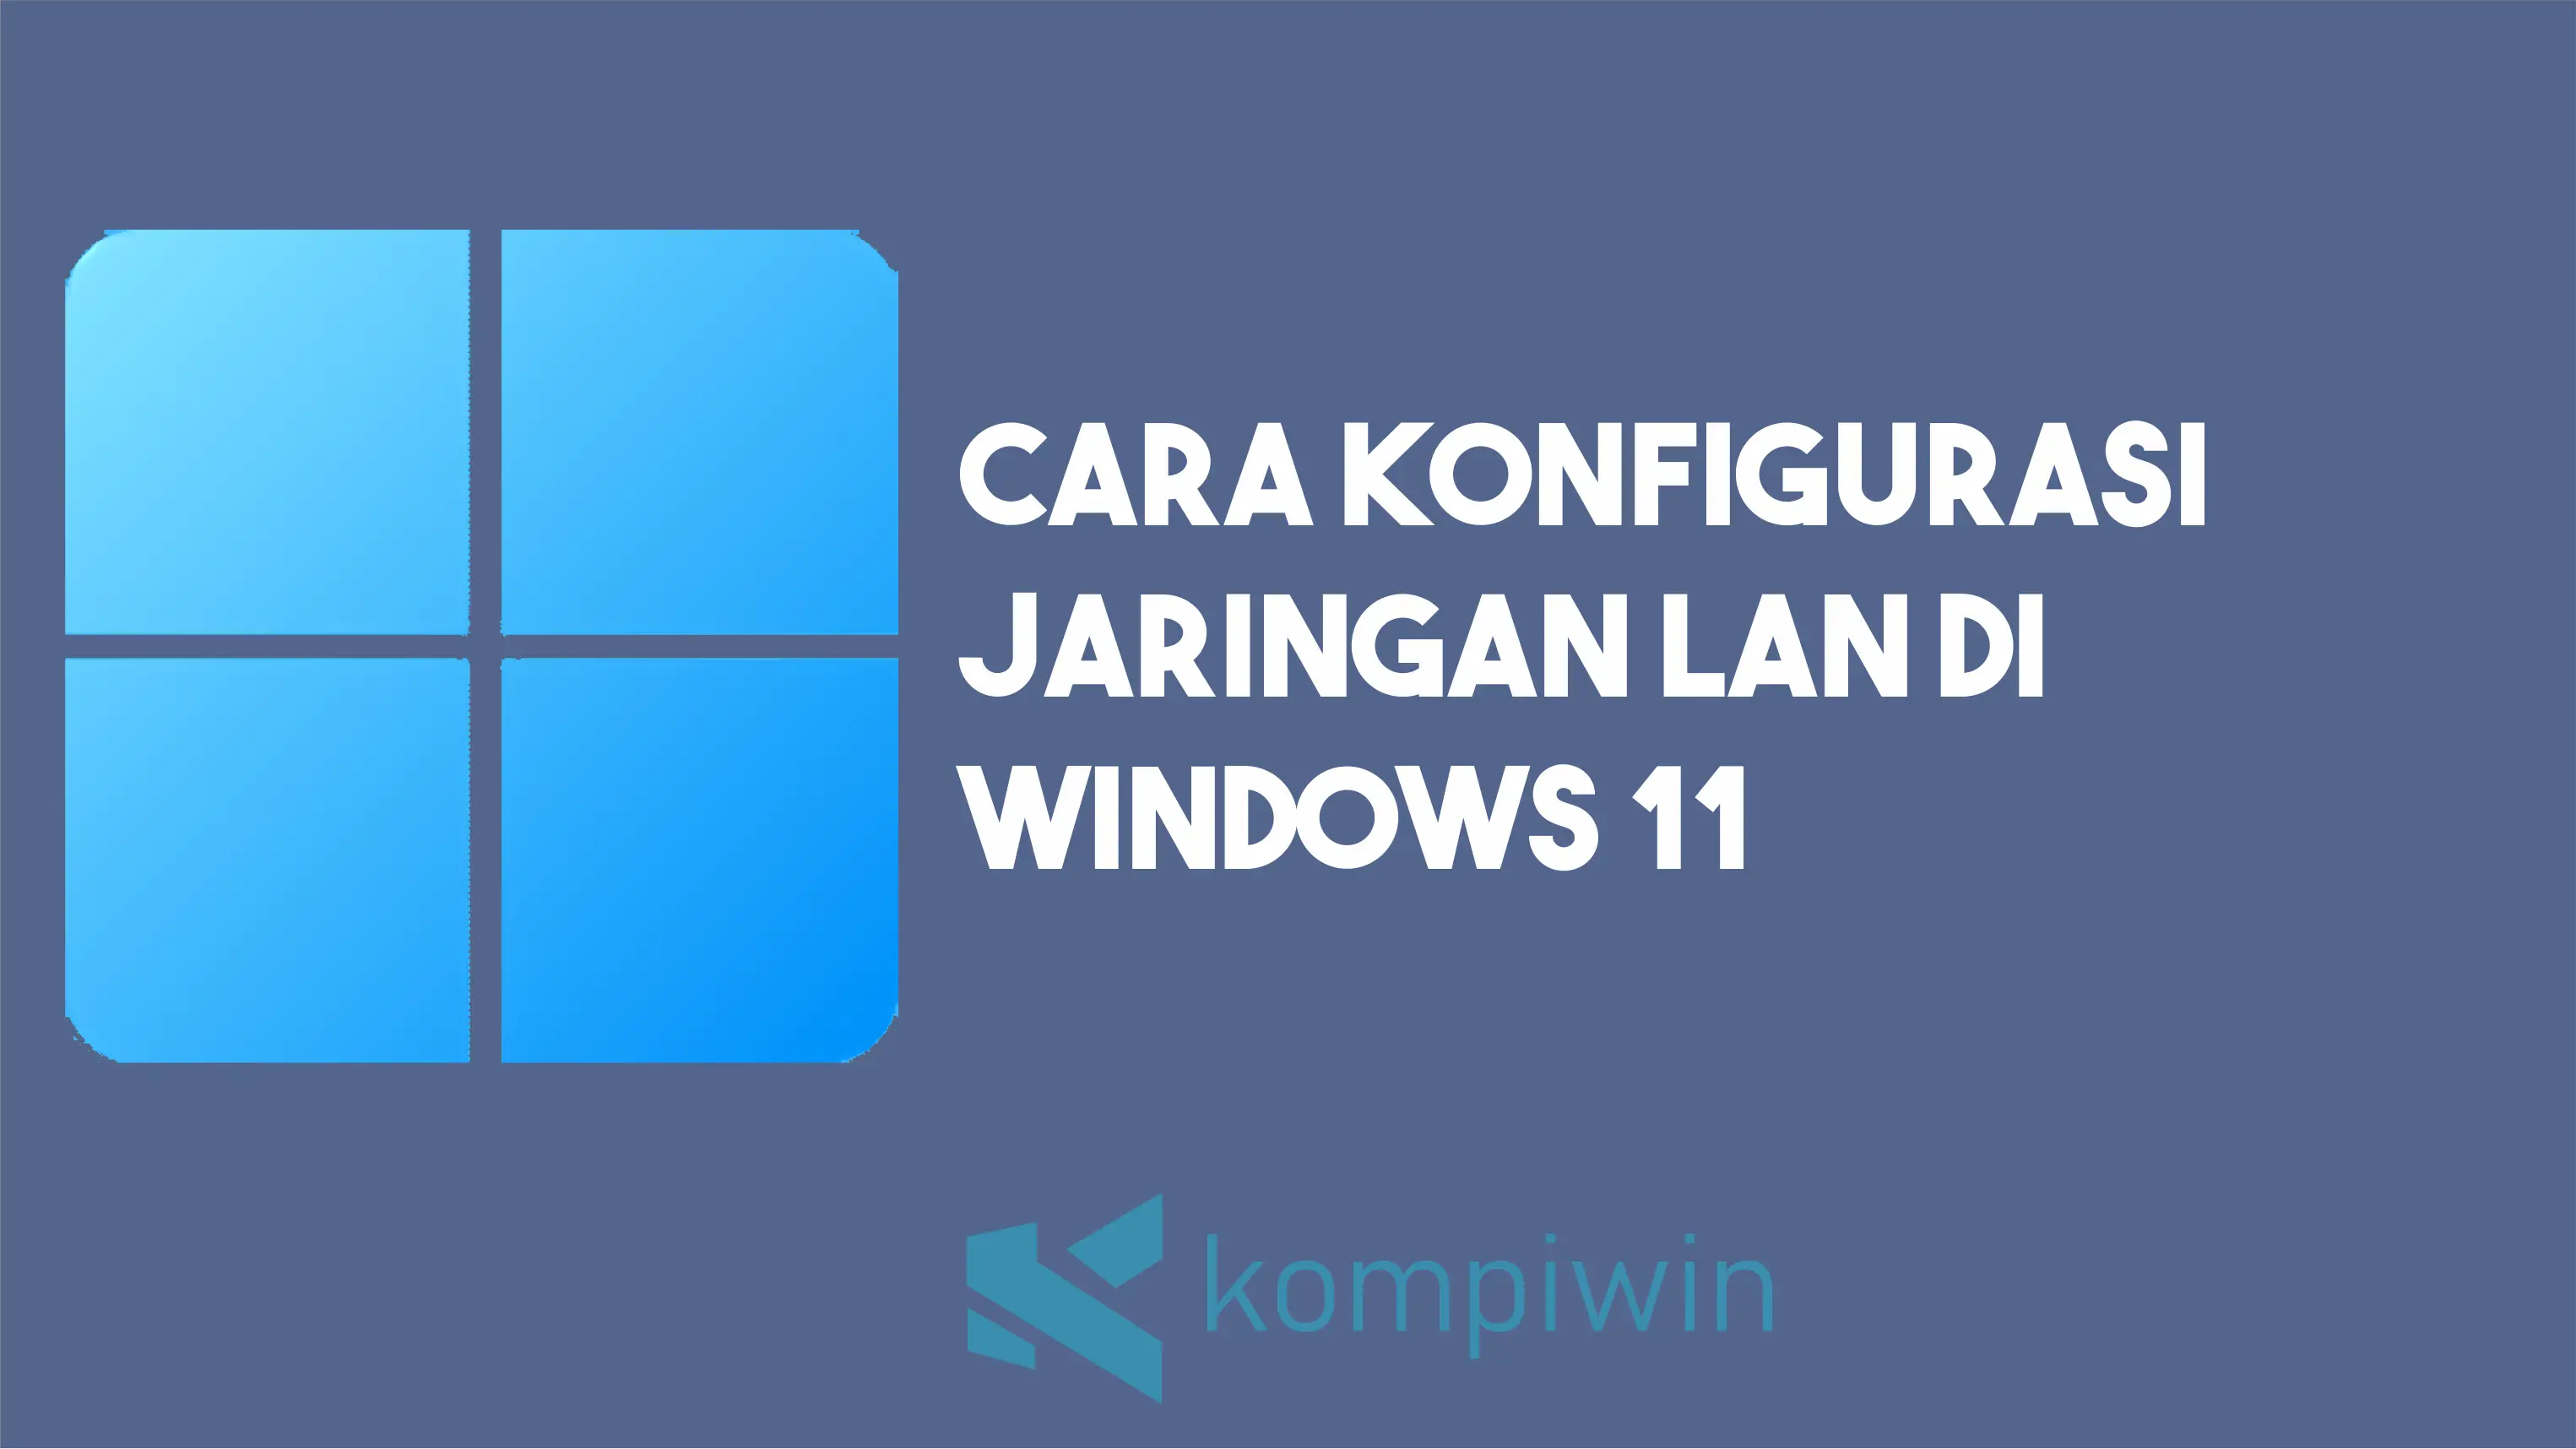 Cara Konfigurasi Jaringan LAN Di Windows 11